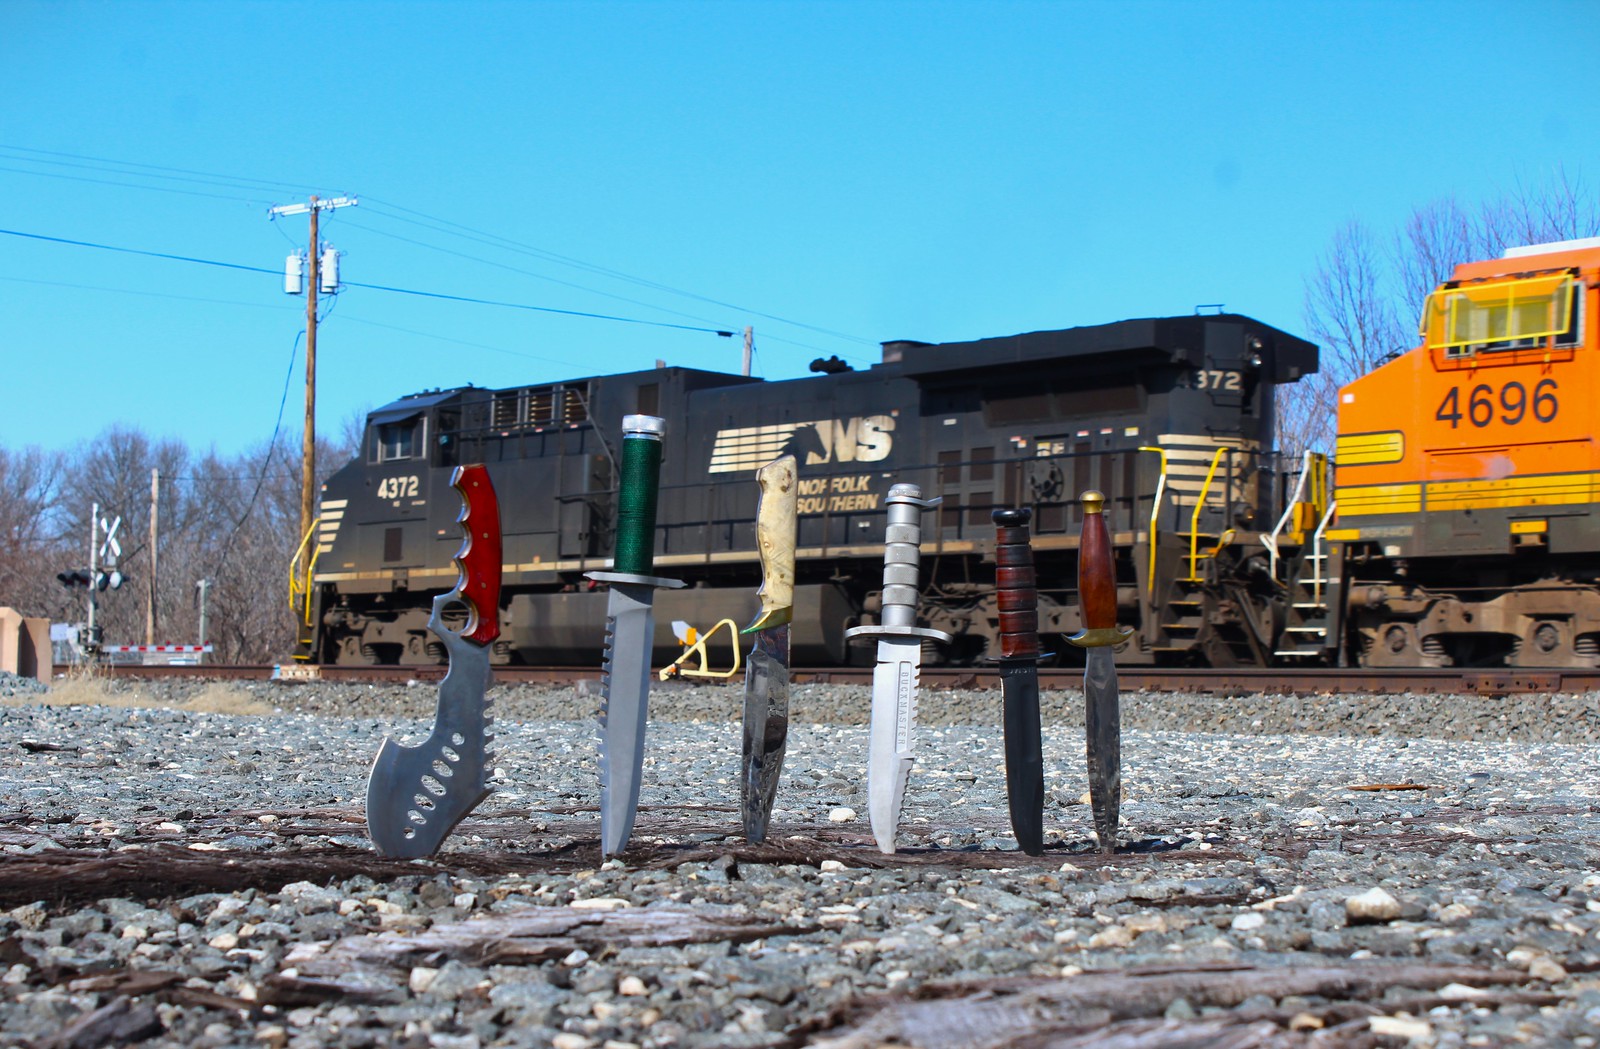 Knives Railfanning